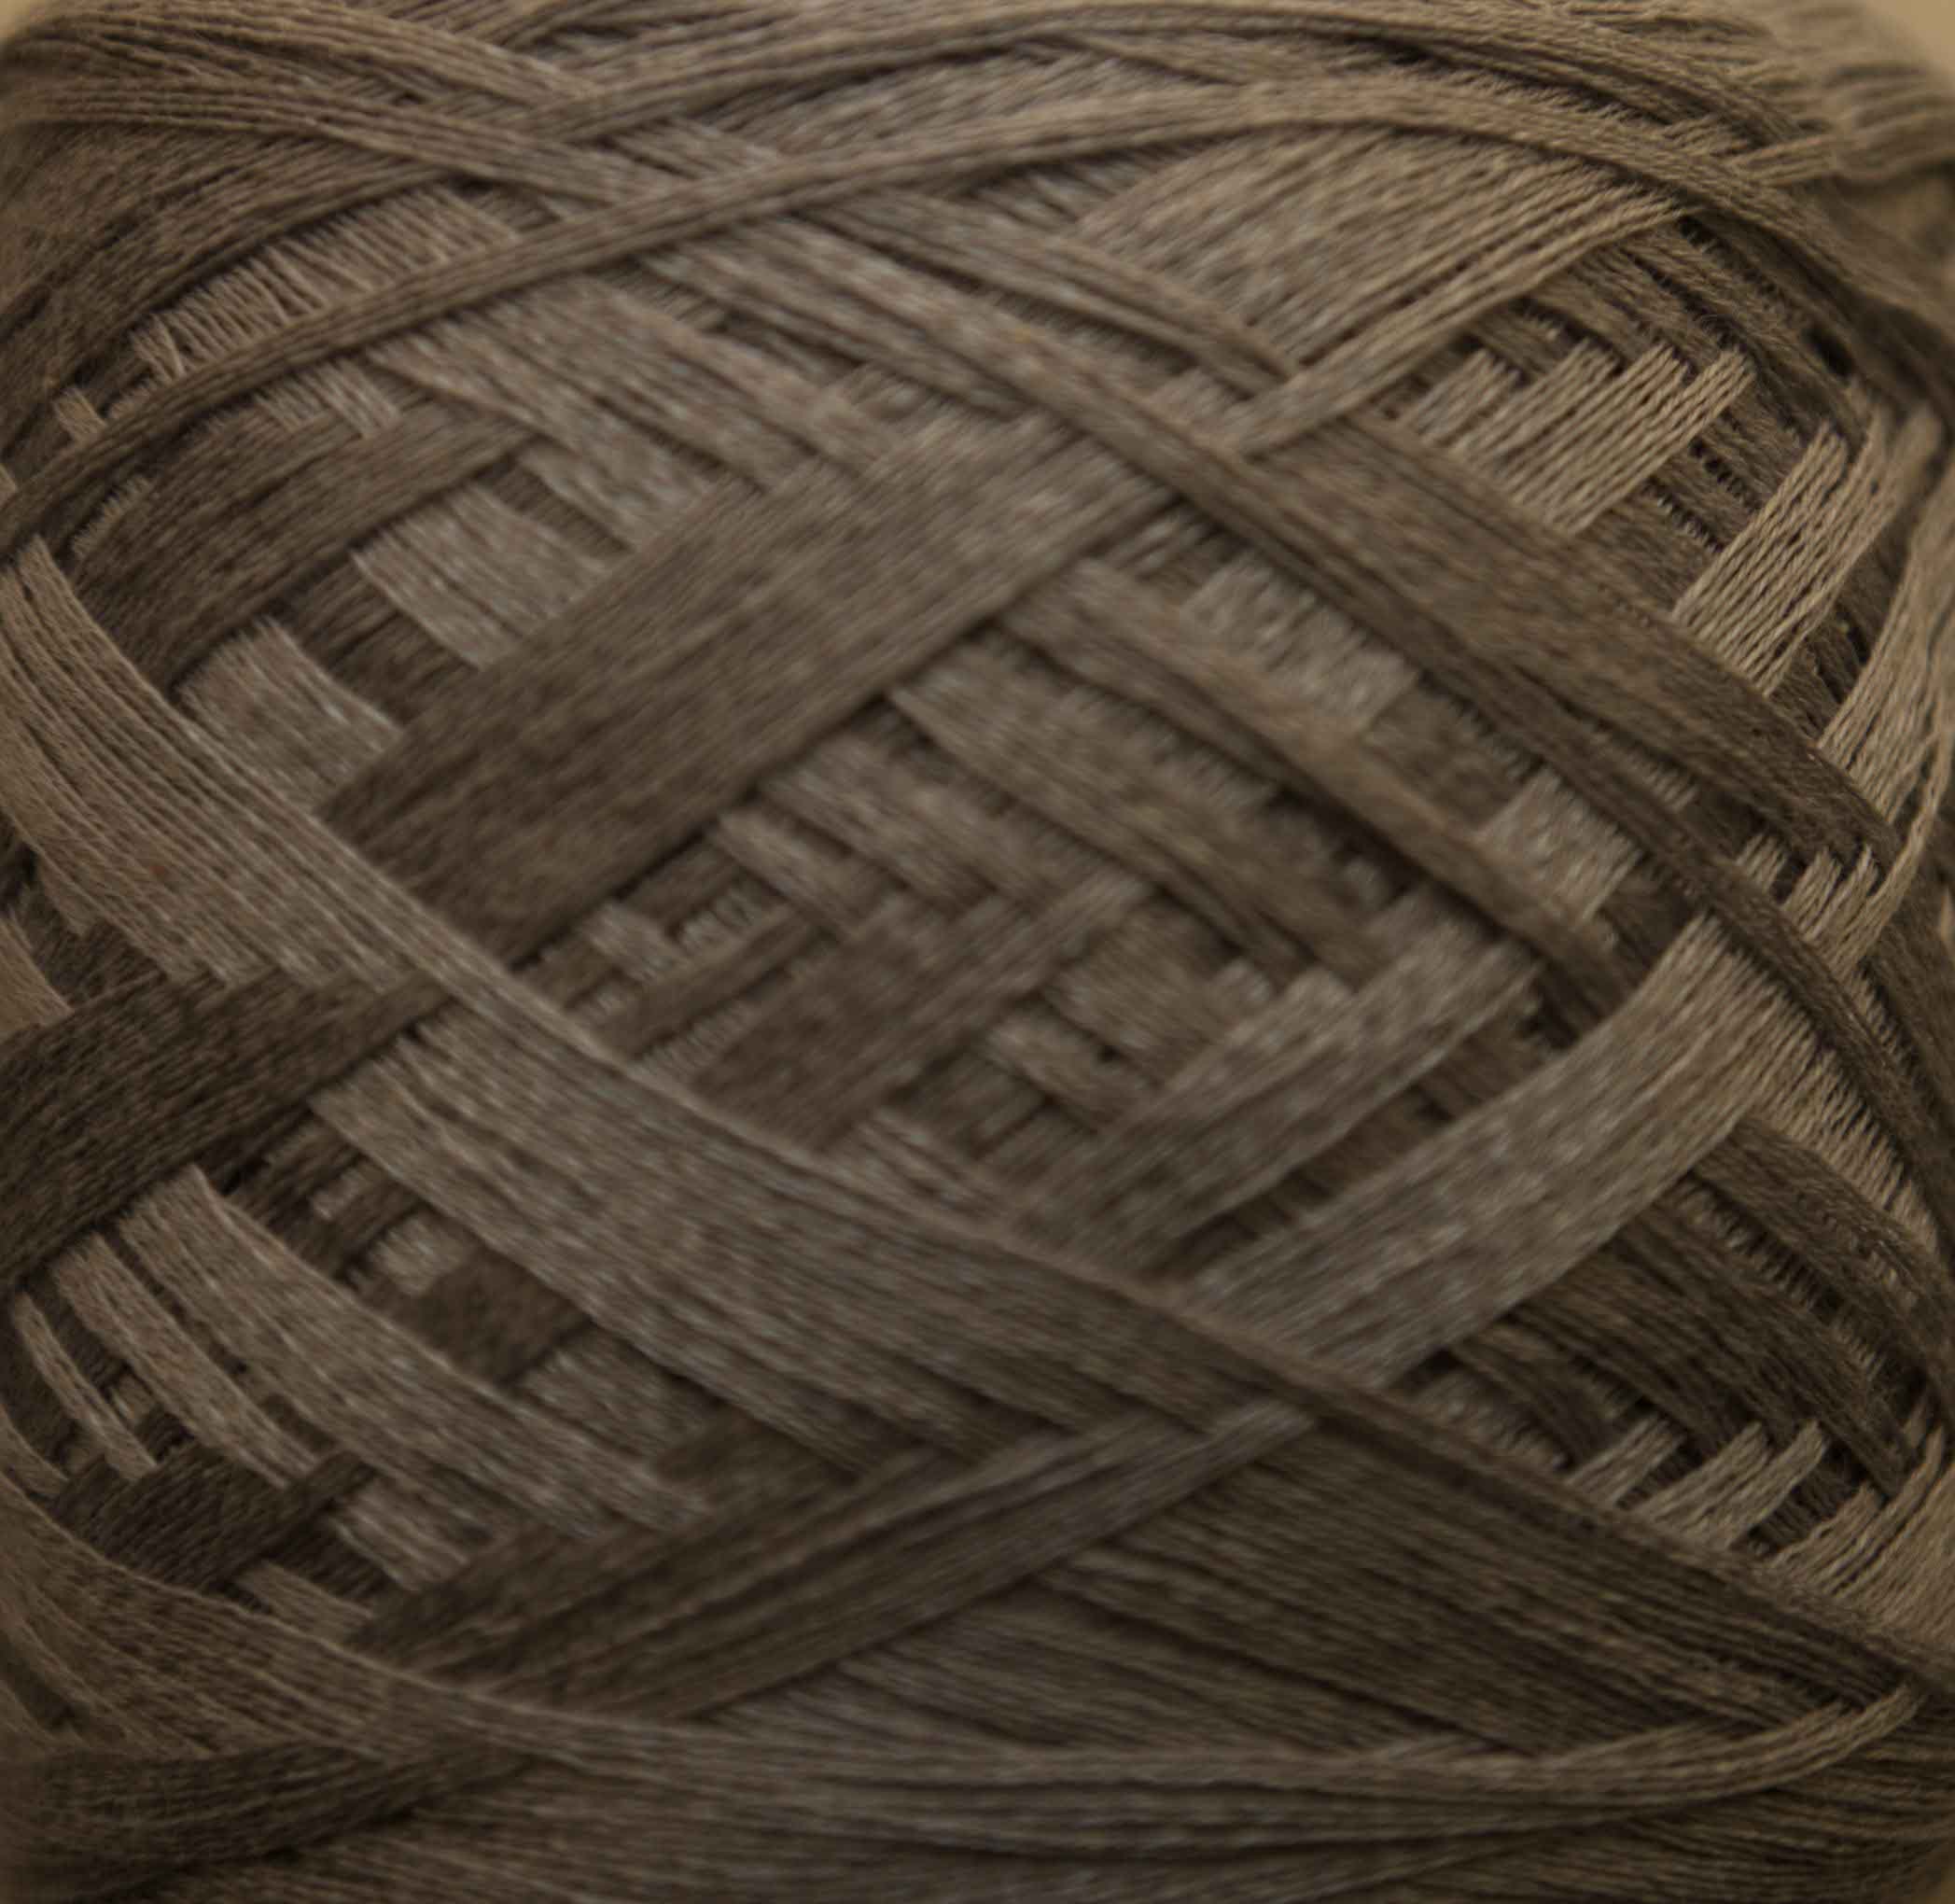 Image: silk yarn